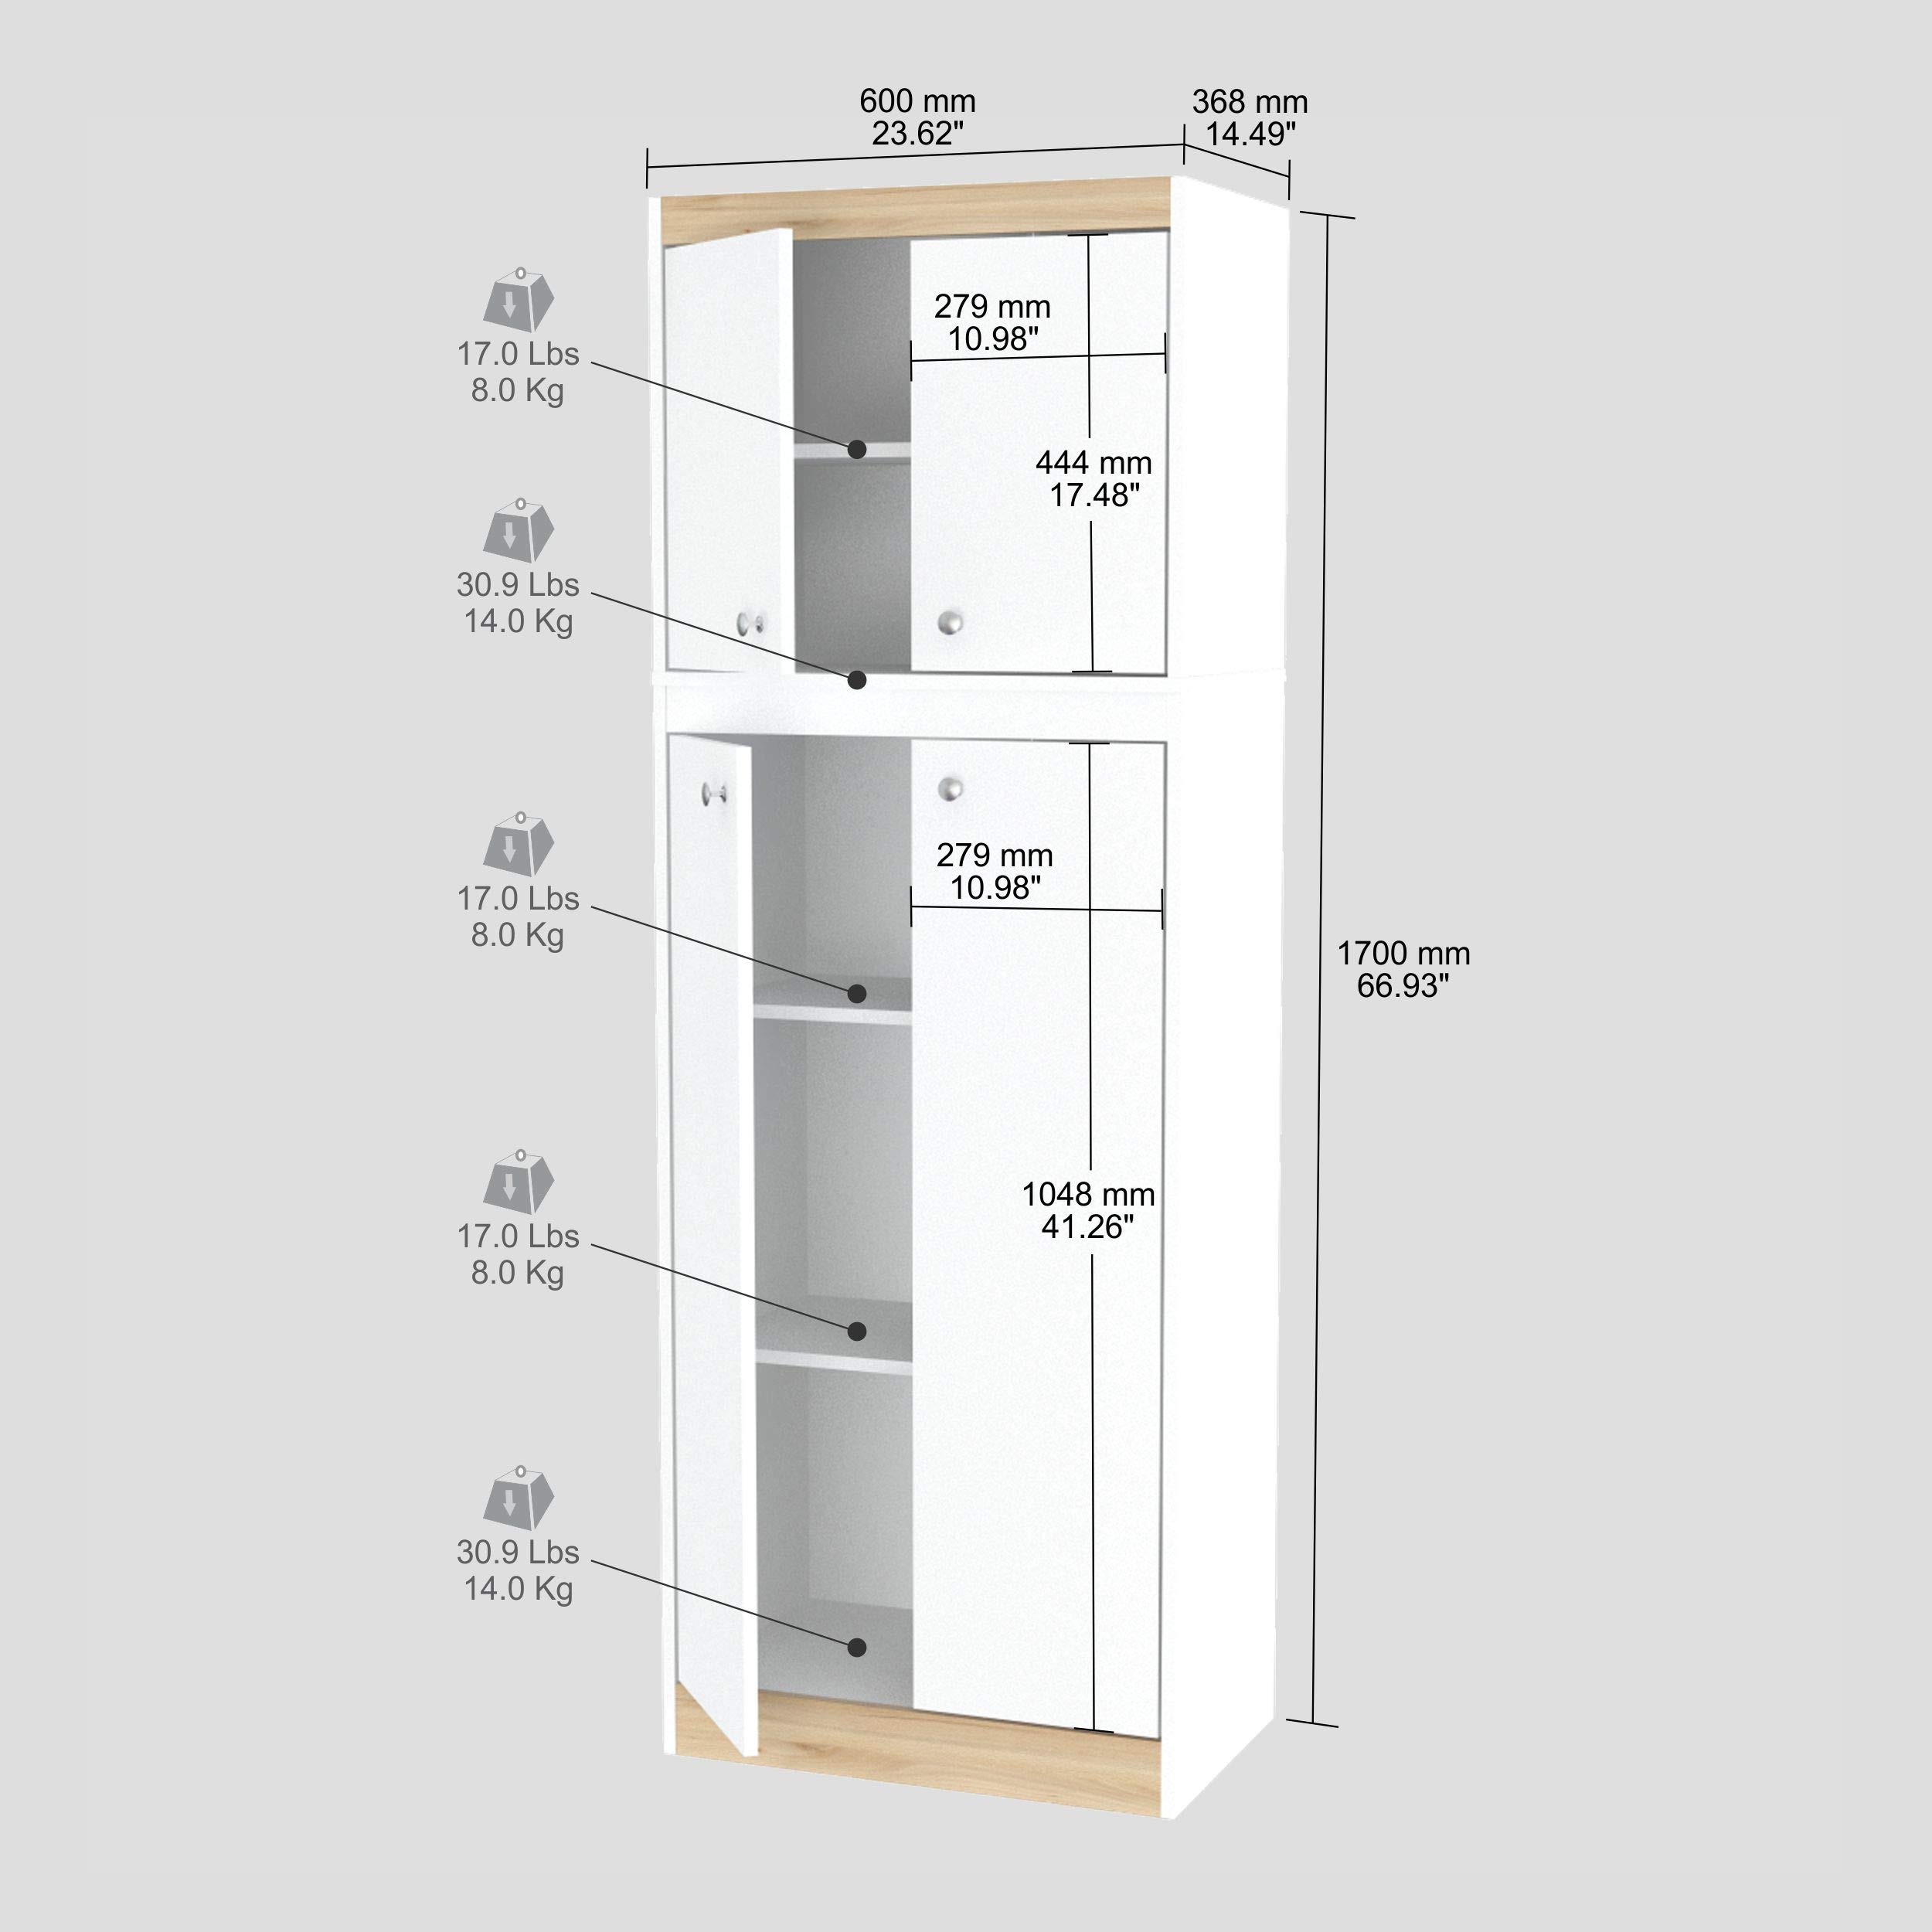 Inval Galley Kitchen 4-Door Storage Cabinet, White & Vienes Oak